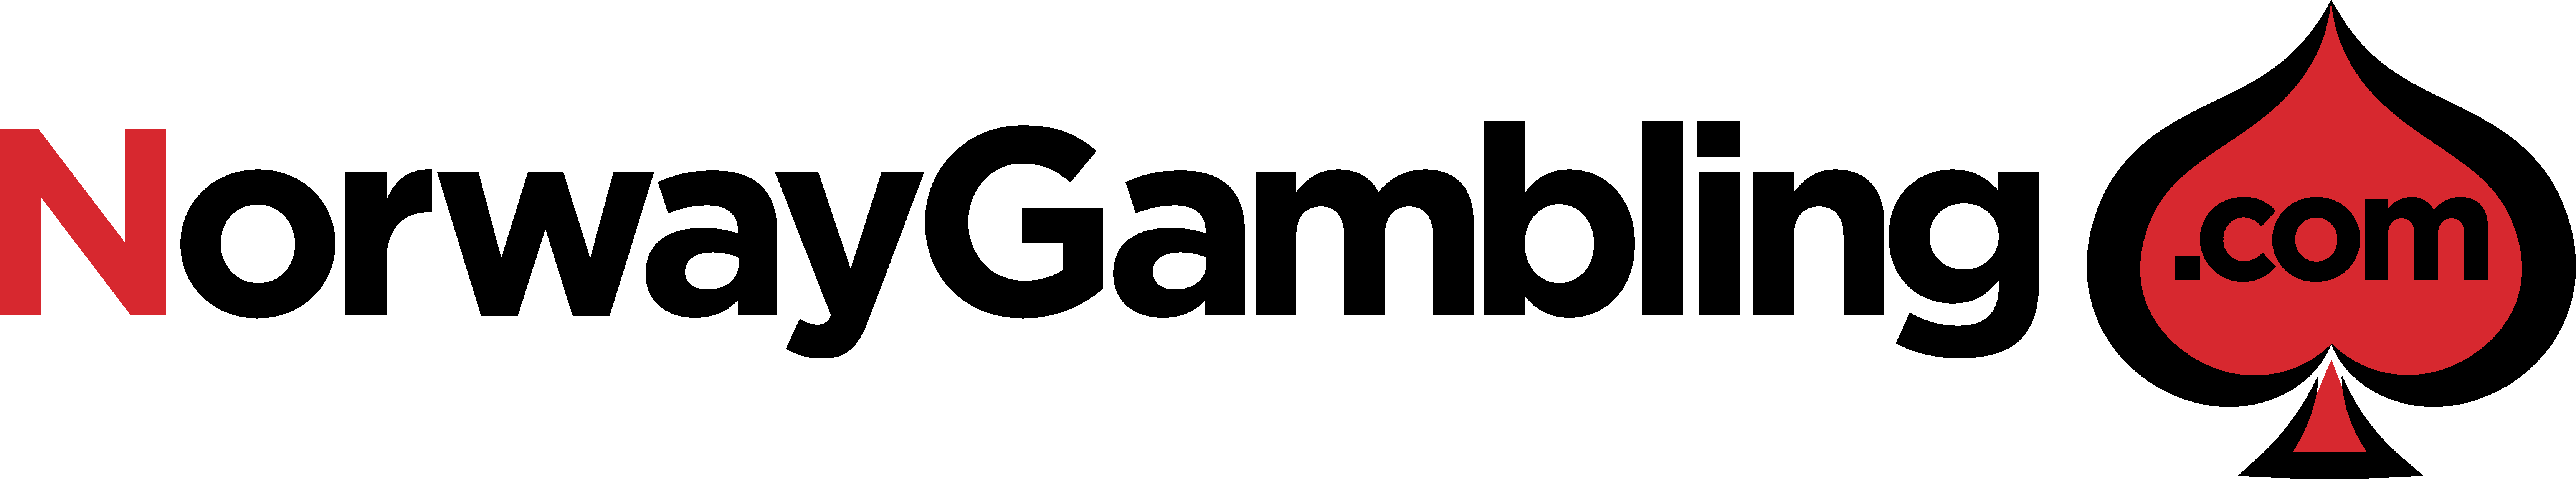 Norwaygambling logo